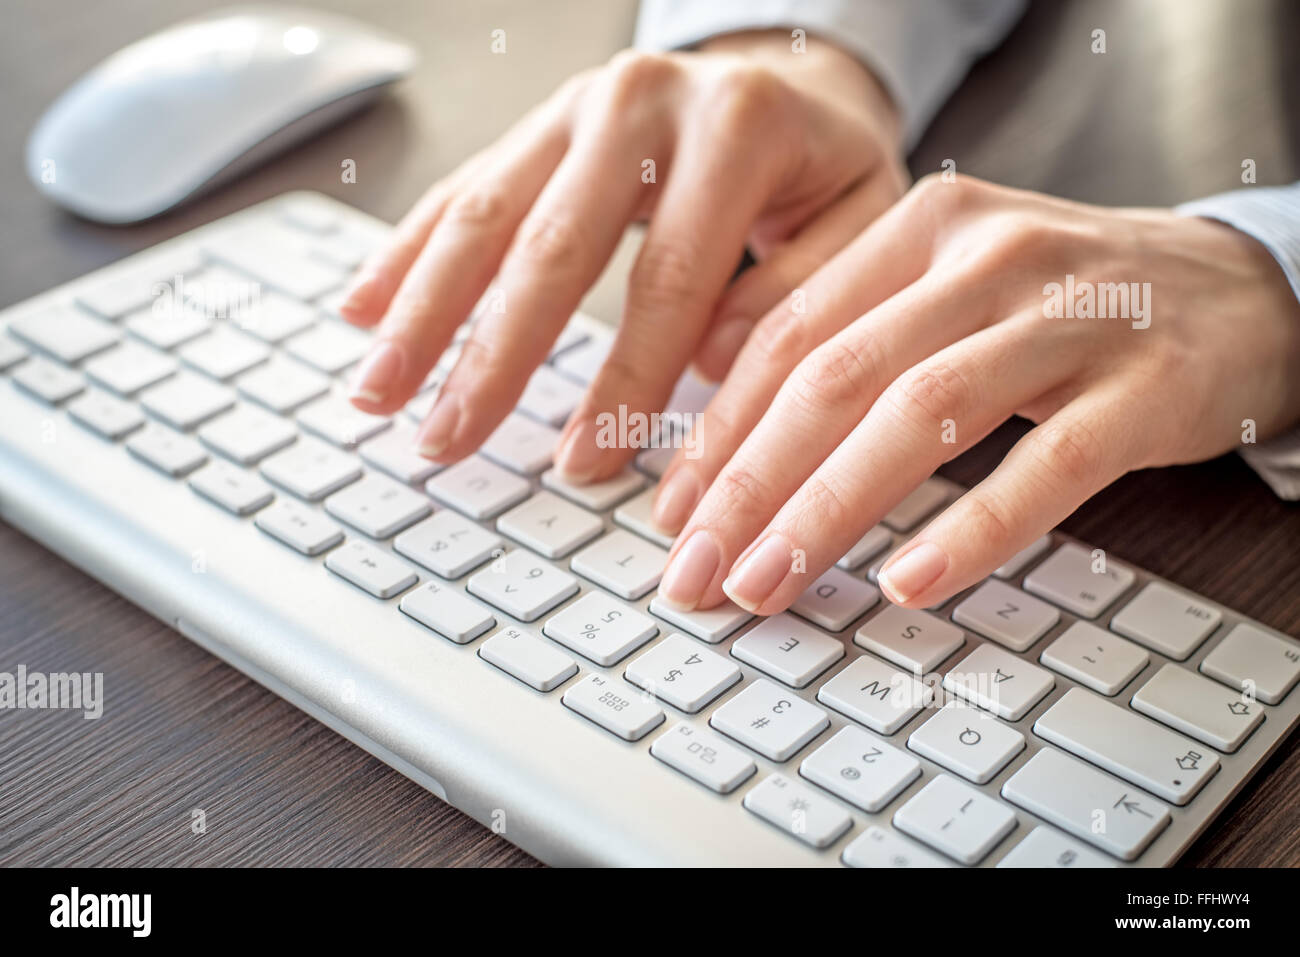 Weibliche Hände auf der Tastatur tippen Stockfotografie - Alamy